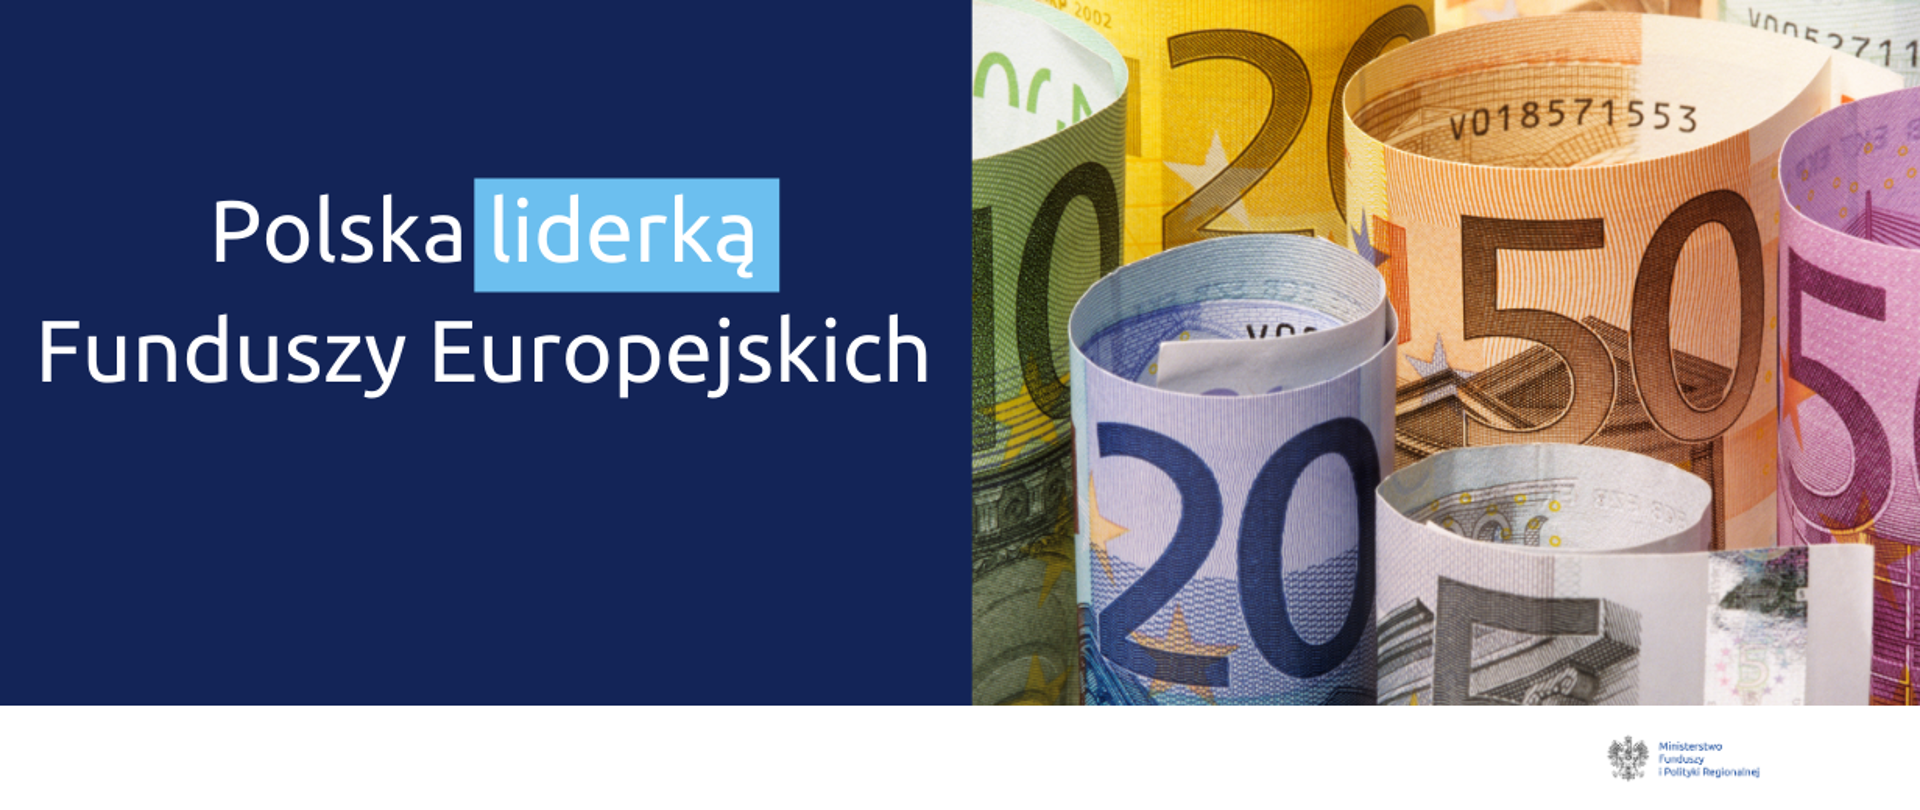 Po lewej napis: "Polska liderką Funduszy Europejskich". Po prawej ilustracja z banknotami euro.